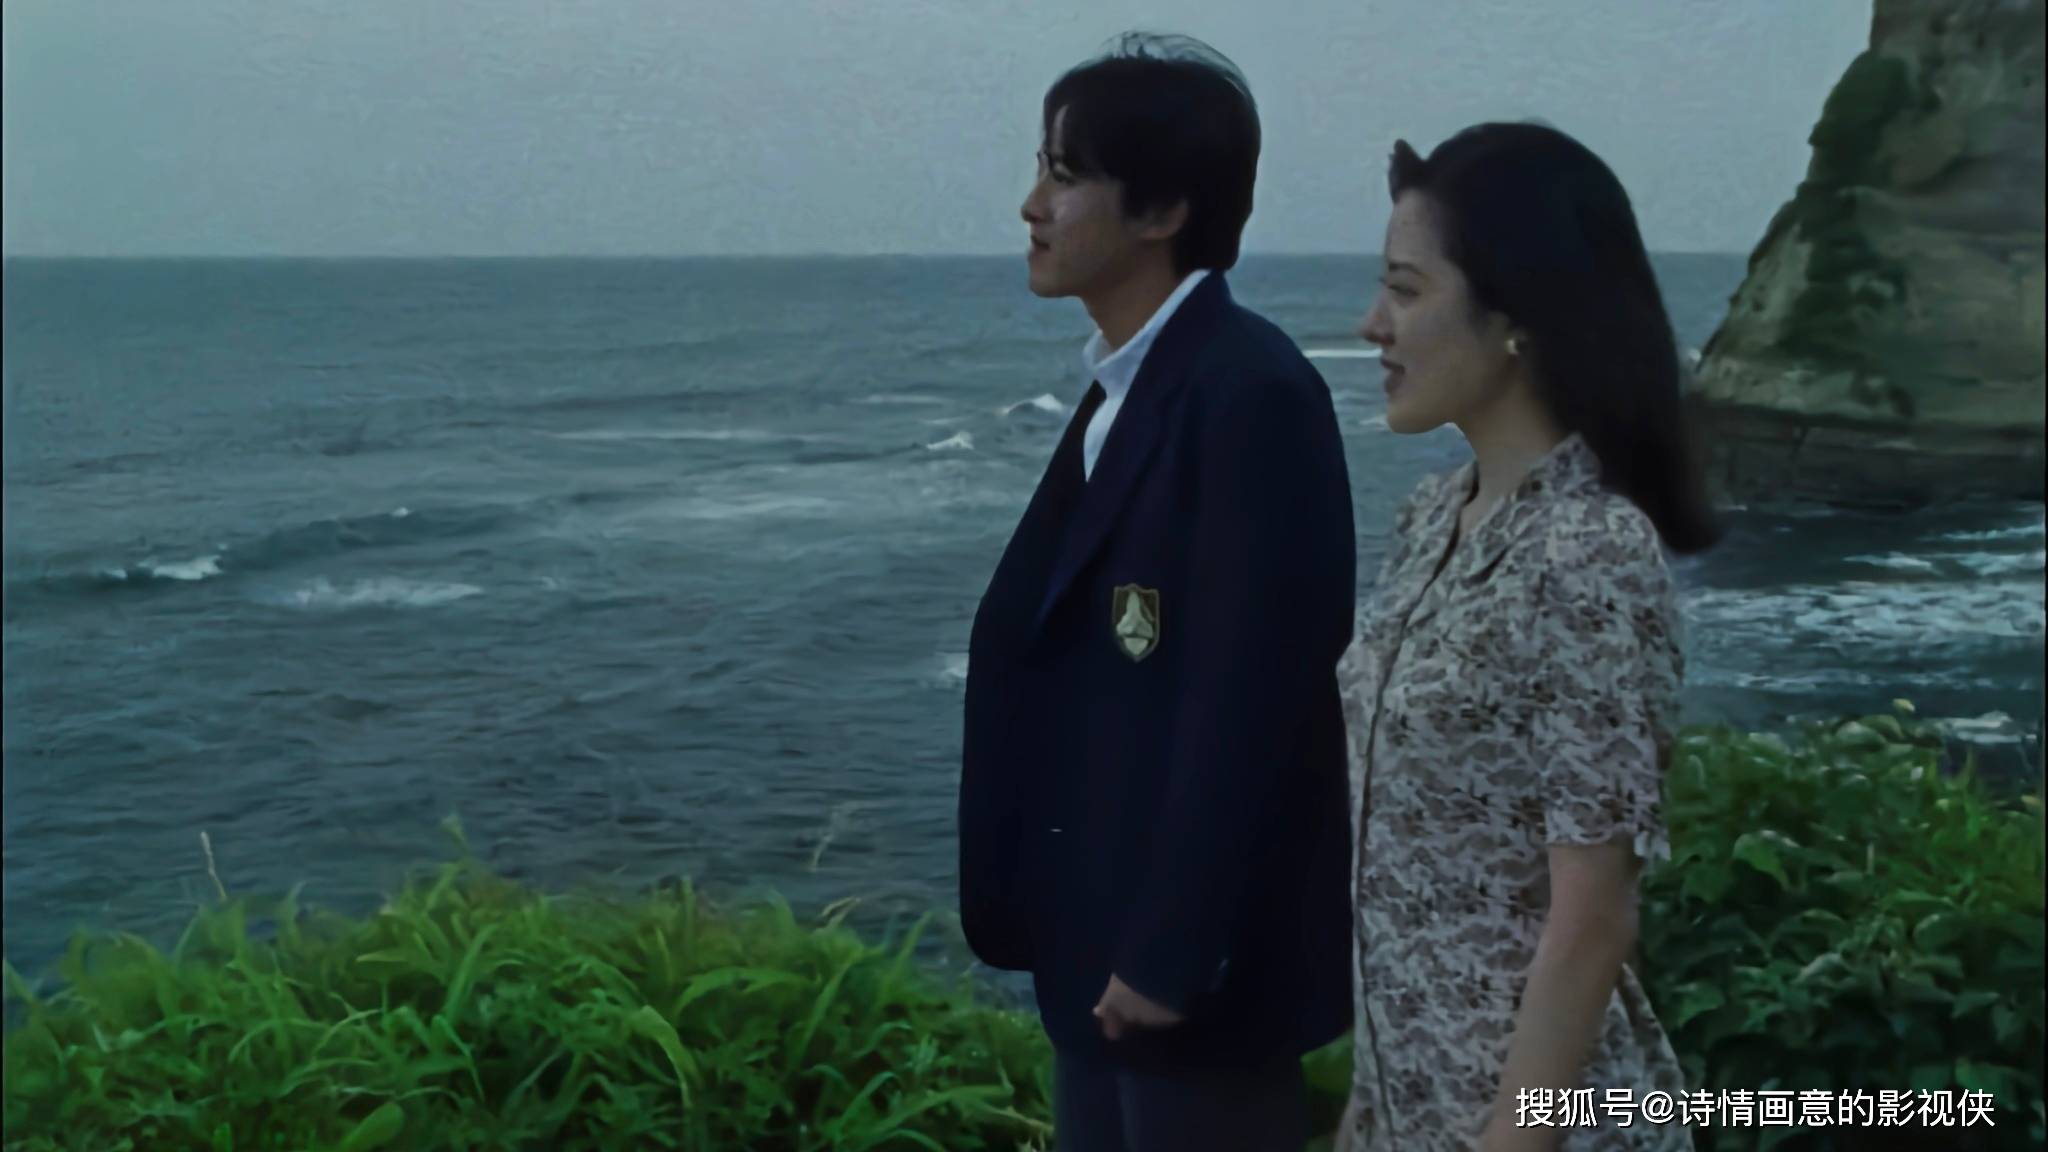 日本风月片《女教师日记》:大竹一重演绎成人世界道德困境与青少年